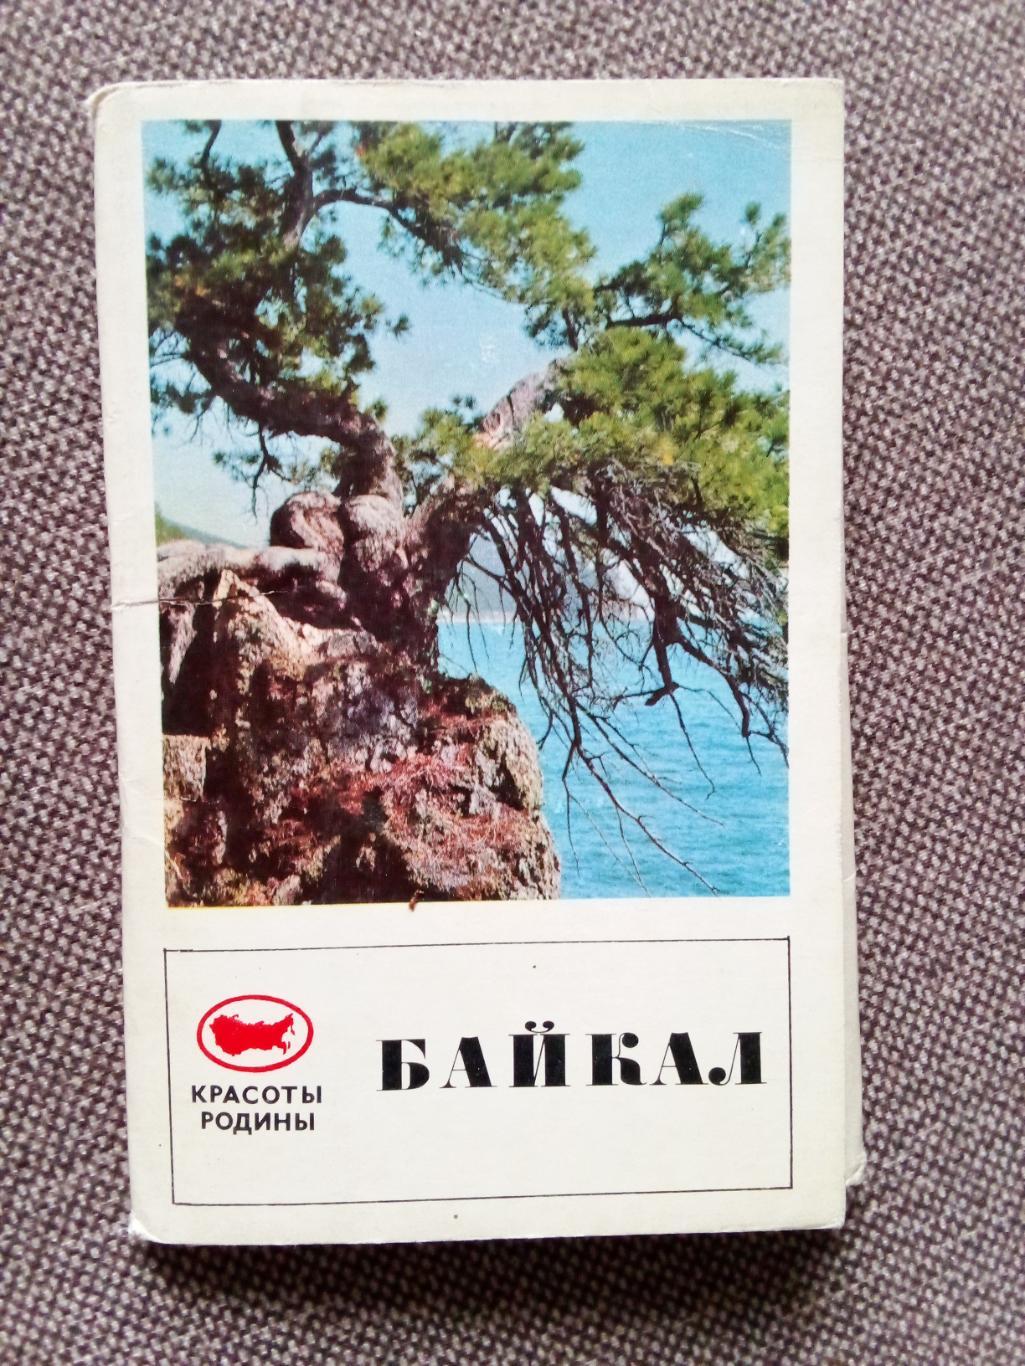 Памятные места СССР : Озеро Байкал 1971 г. полный набор - 15 открыток (чистые)